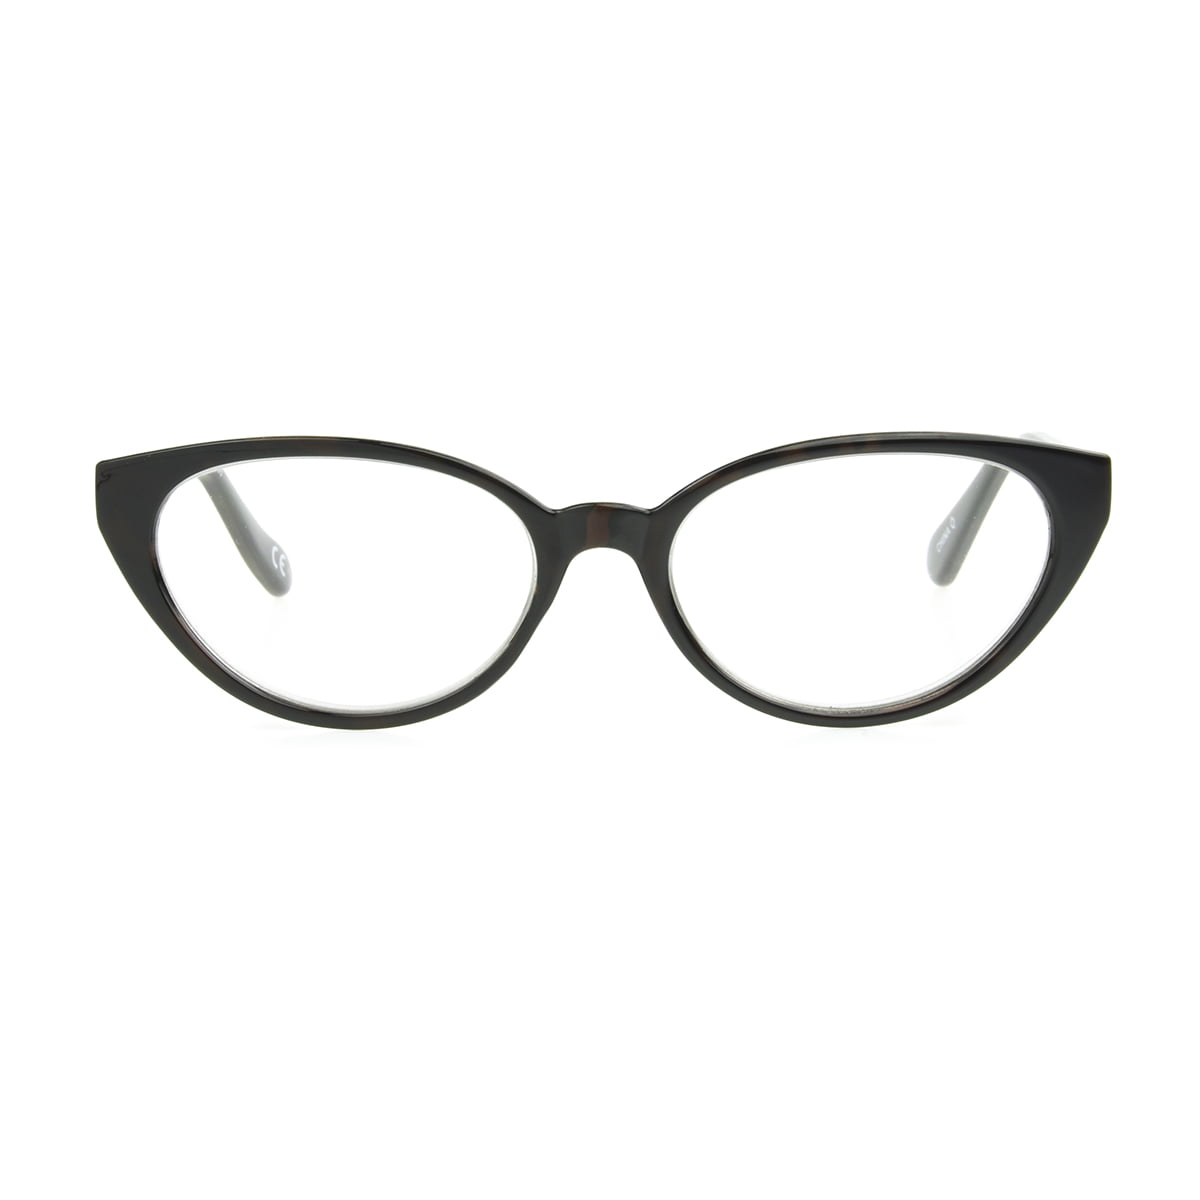 Sofia Vergara x Foster Grant Camila Reading Glasses, Cat Eye Full Frame ...